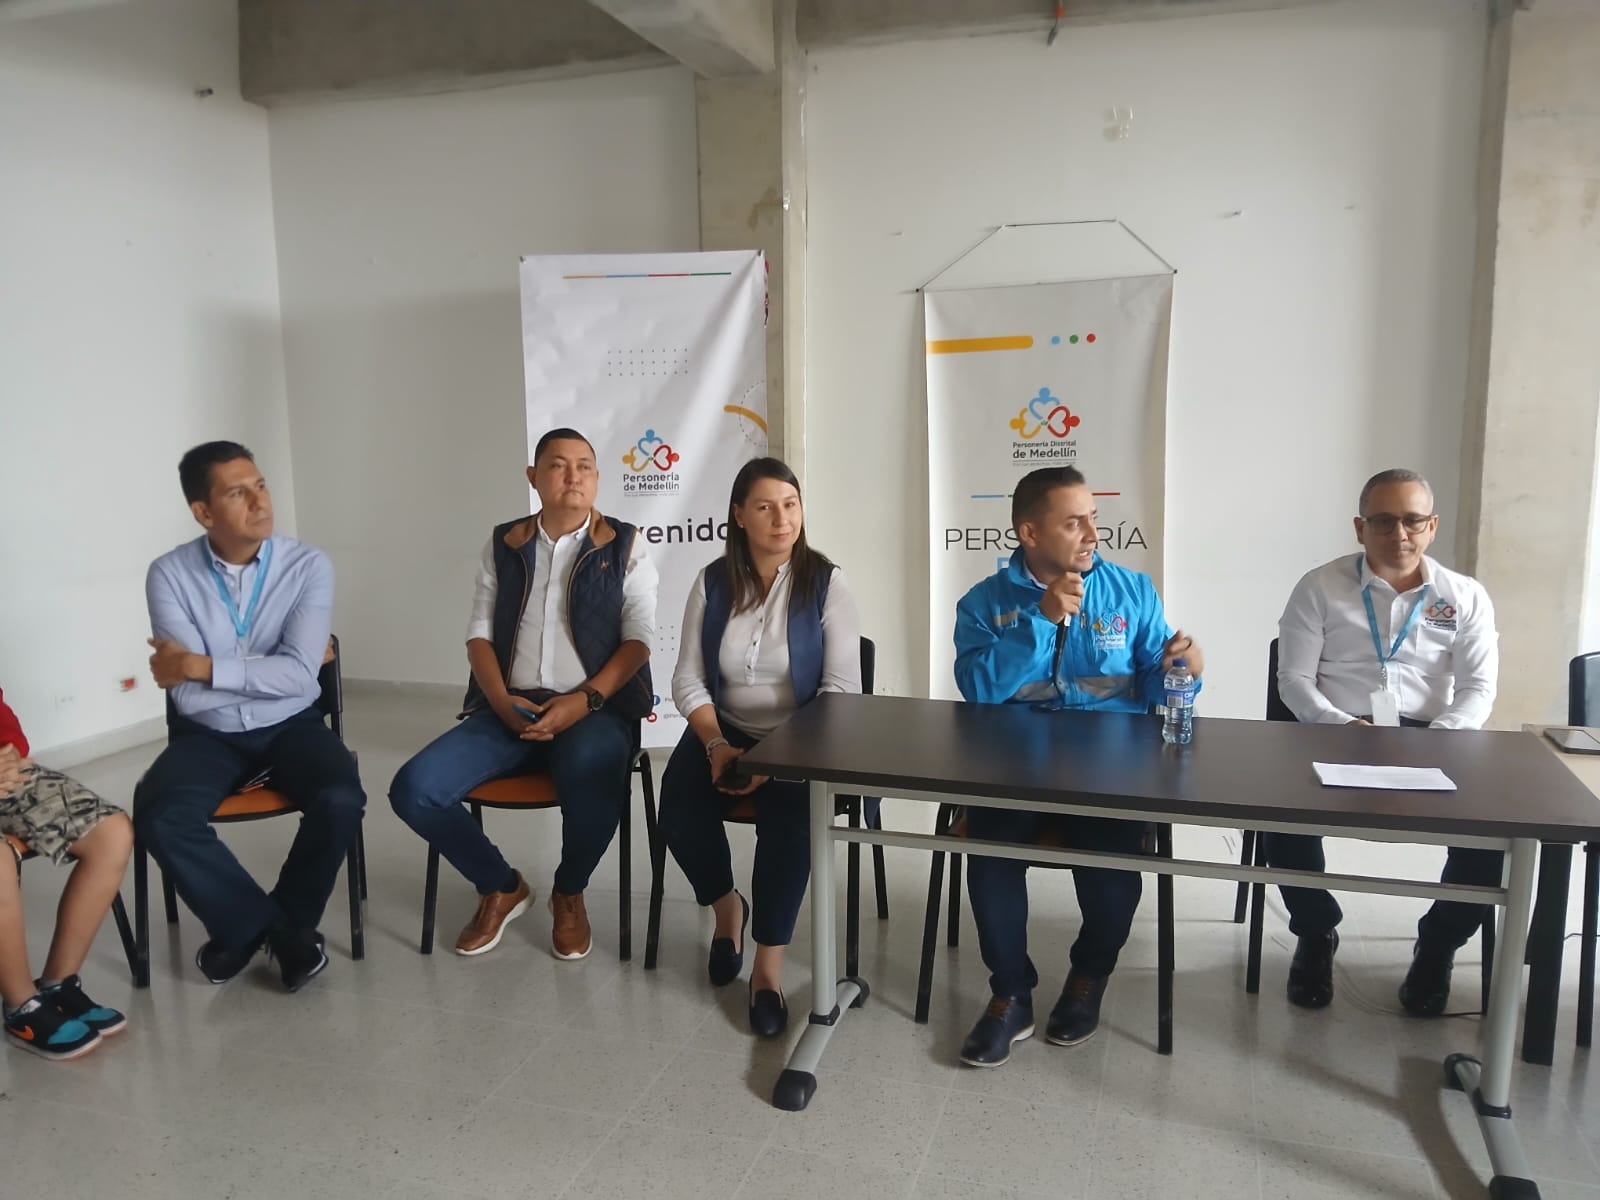 Visita inaugural del Personero Distrital de Medellín a San Antonio de Prado: Compromiso con la Comunidad